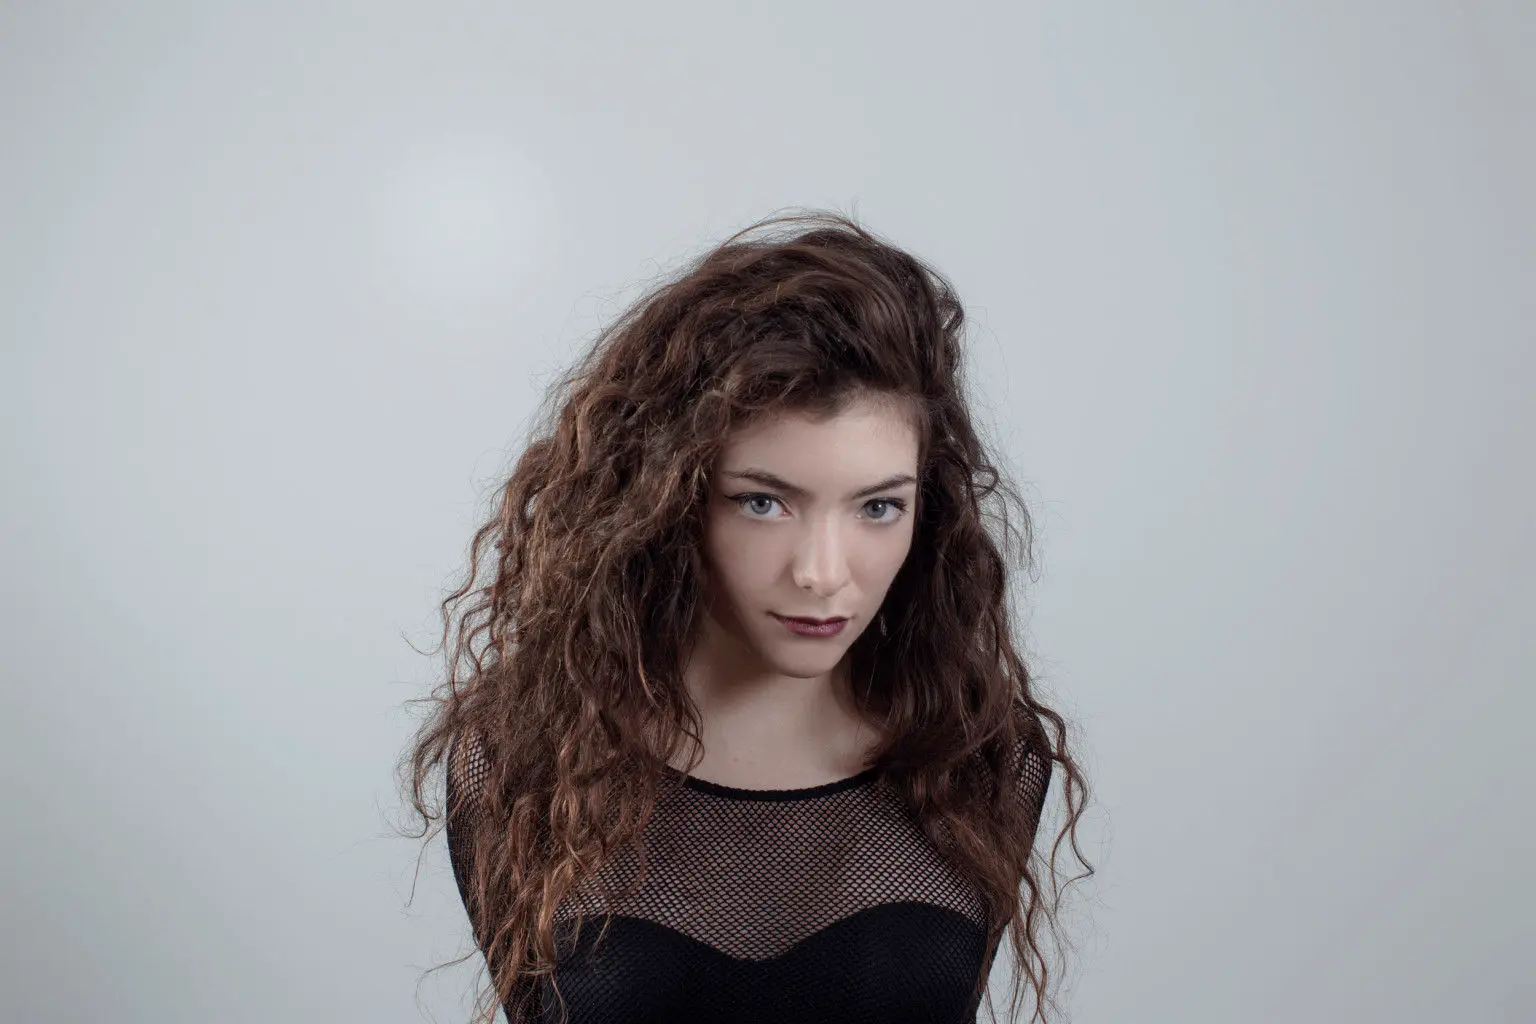 Le premier album de Lorde sortira en octobre